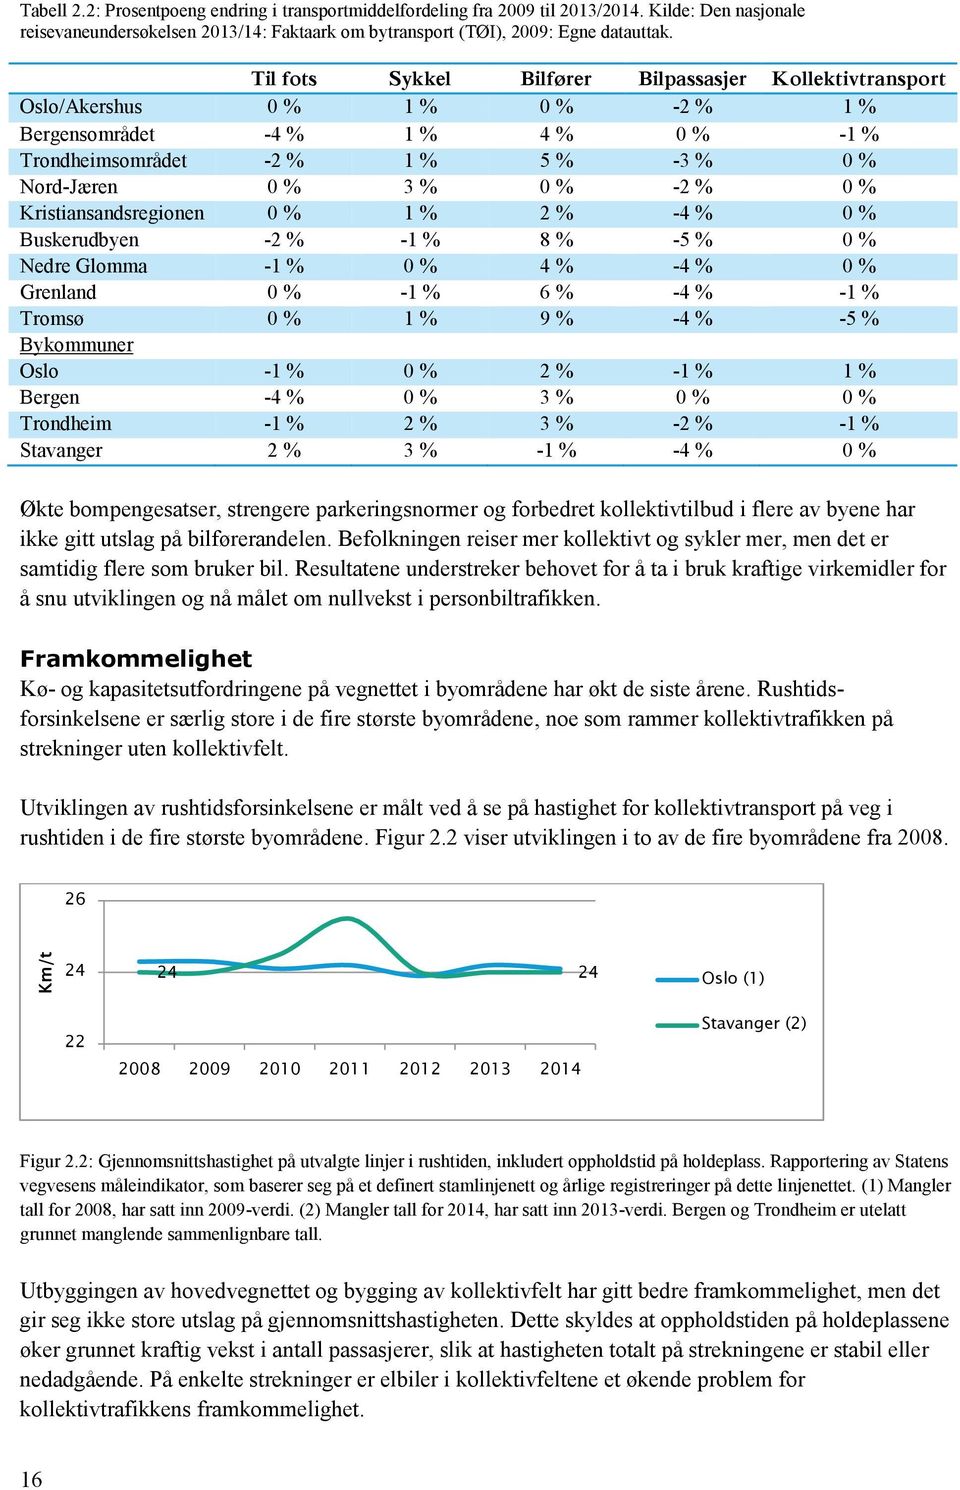 % Kristiansandsregionen 0 % 1 % 2 % -4 % 0 % Buskerudbyen -2 % -1 % 8 % -5 % 0 % Nedre Glomma -1 % 0 % 4 % -4 % 0 % Grenland 0 % -1 % 6 % -4 % -1 % Tromsø 0 % 1 % 9 % -4 % -5 % Bykommuner Oslo -1 % 0